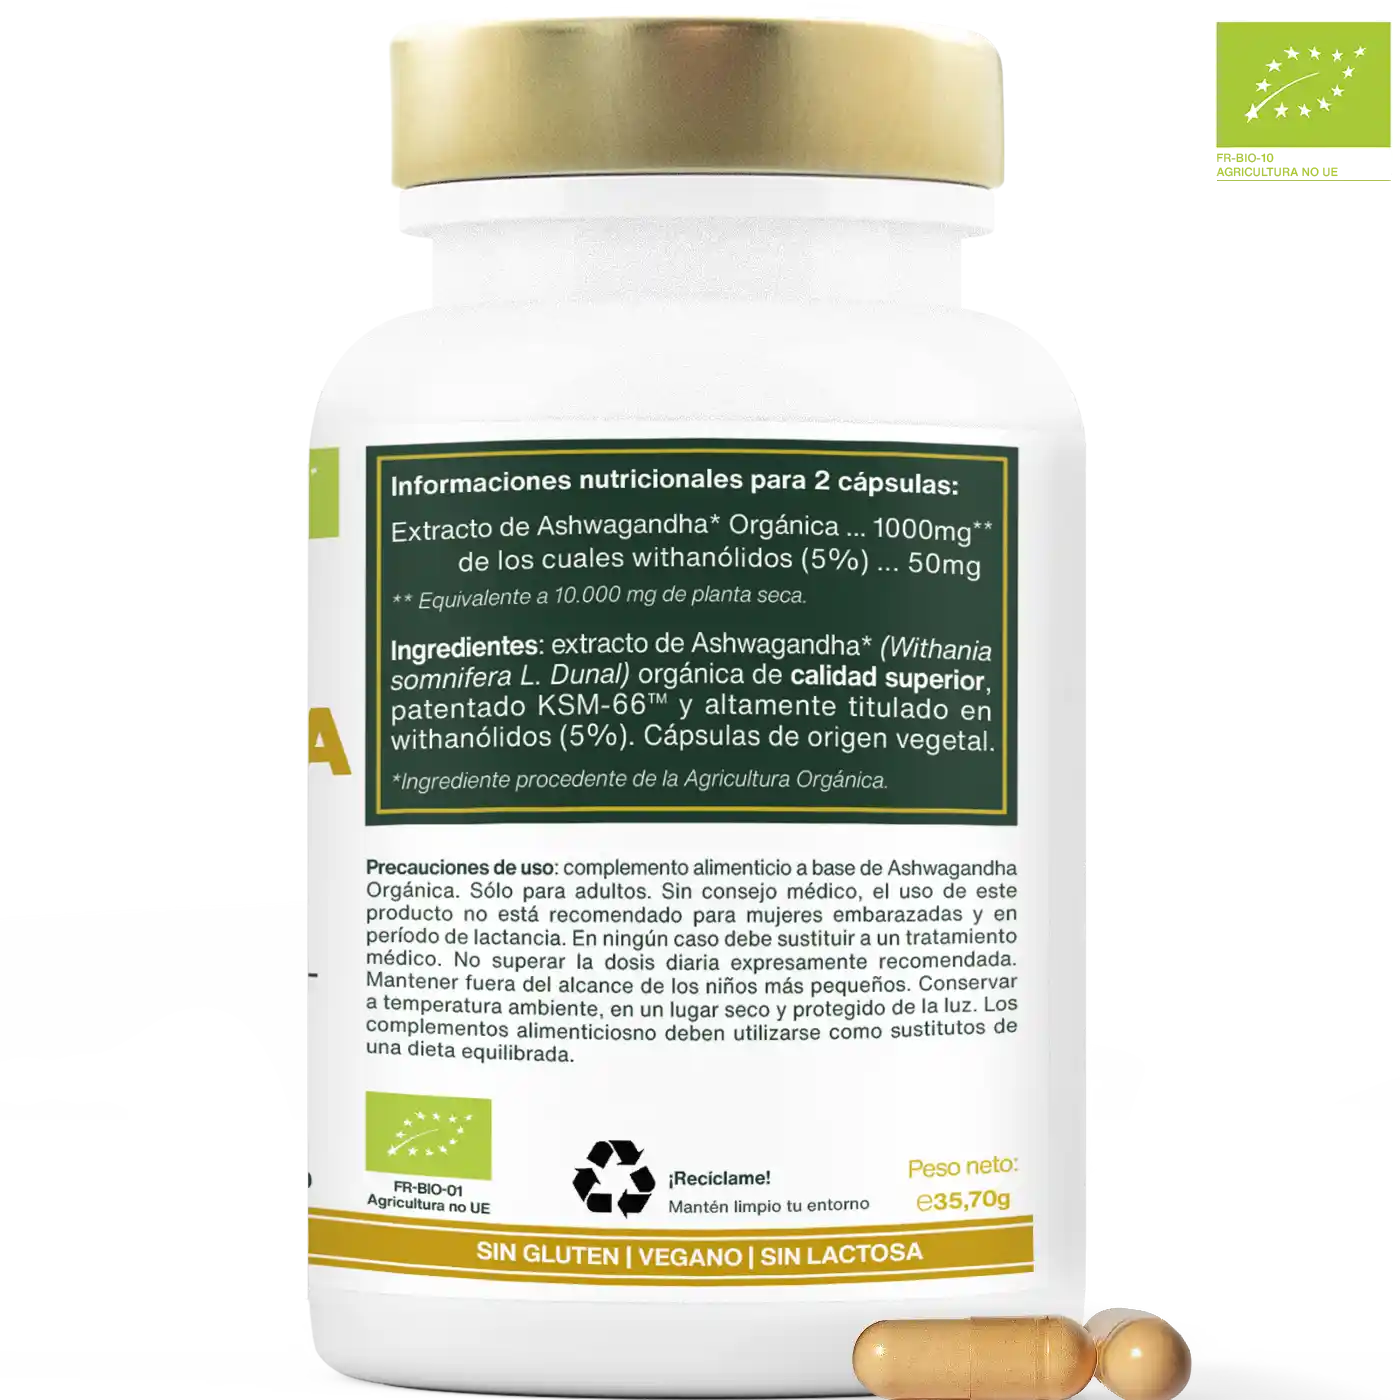 Ashwagandha ksm 66 capsulas bio amoseeds especialista de los superalimentos bio